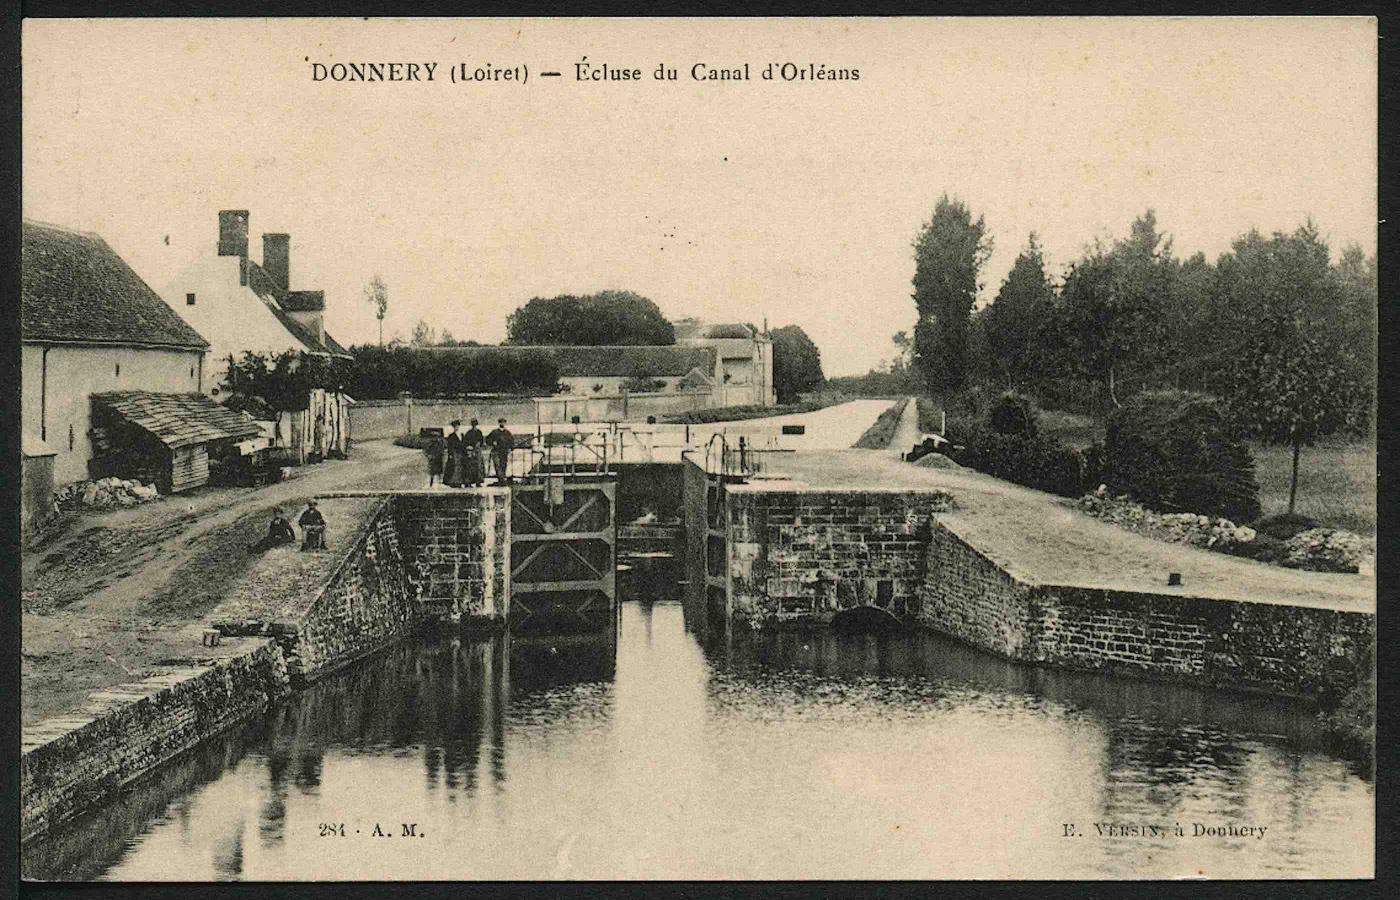 Carte postale ancienne avec la vue d'une écluse du canal d'Orléans à Donnery